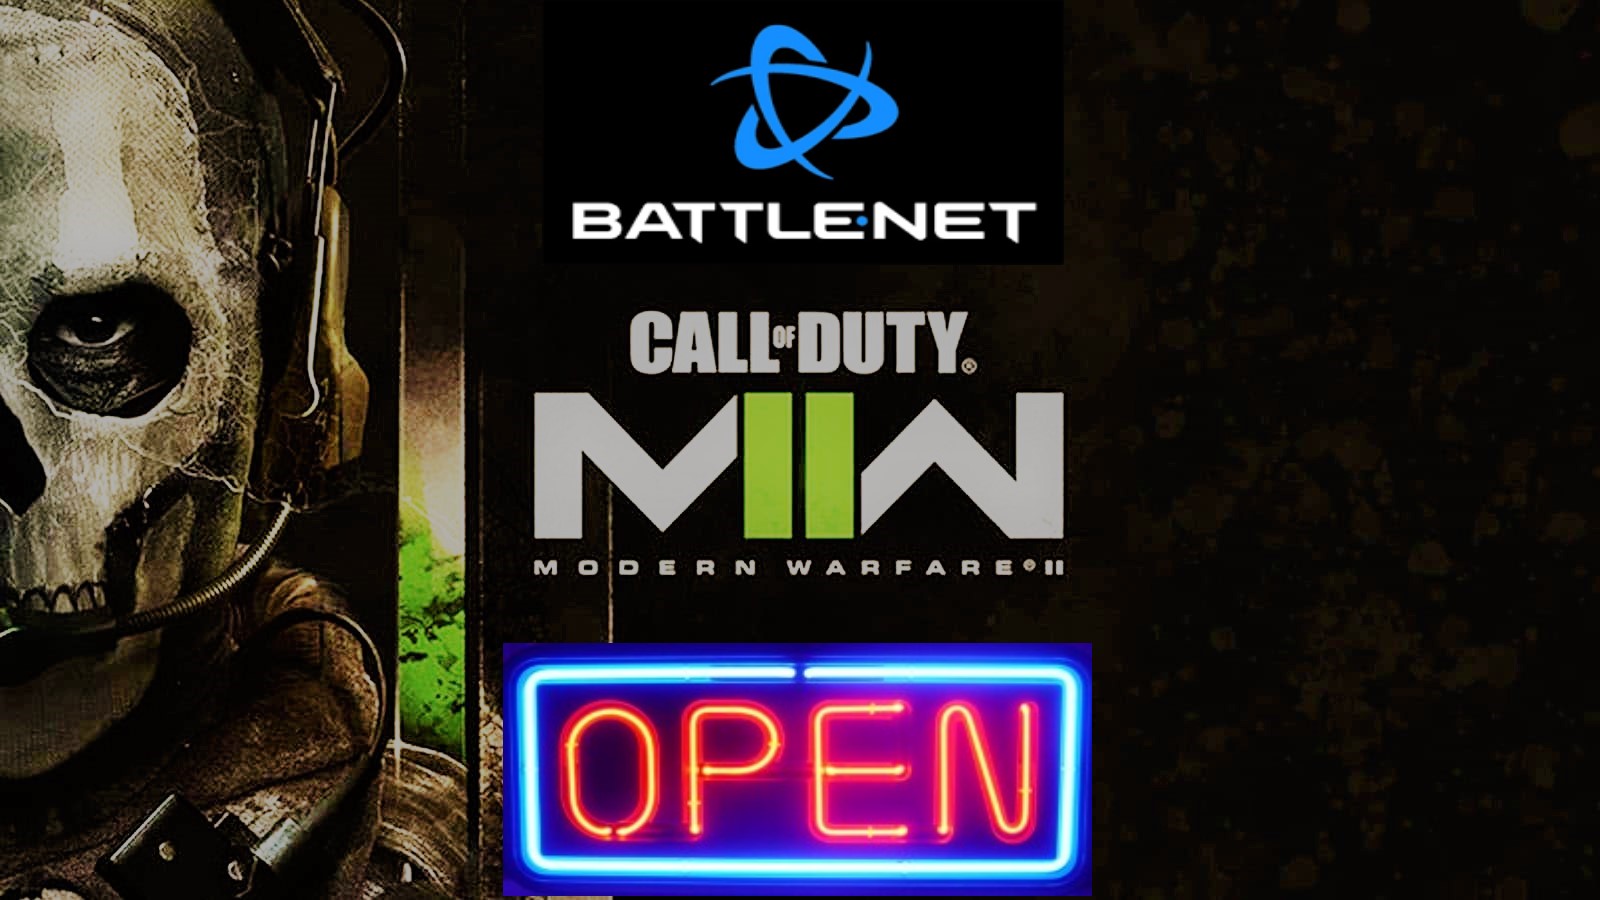 Call of duty Modern Warfare 2022 | Battle.net PC 24h|